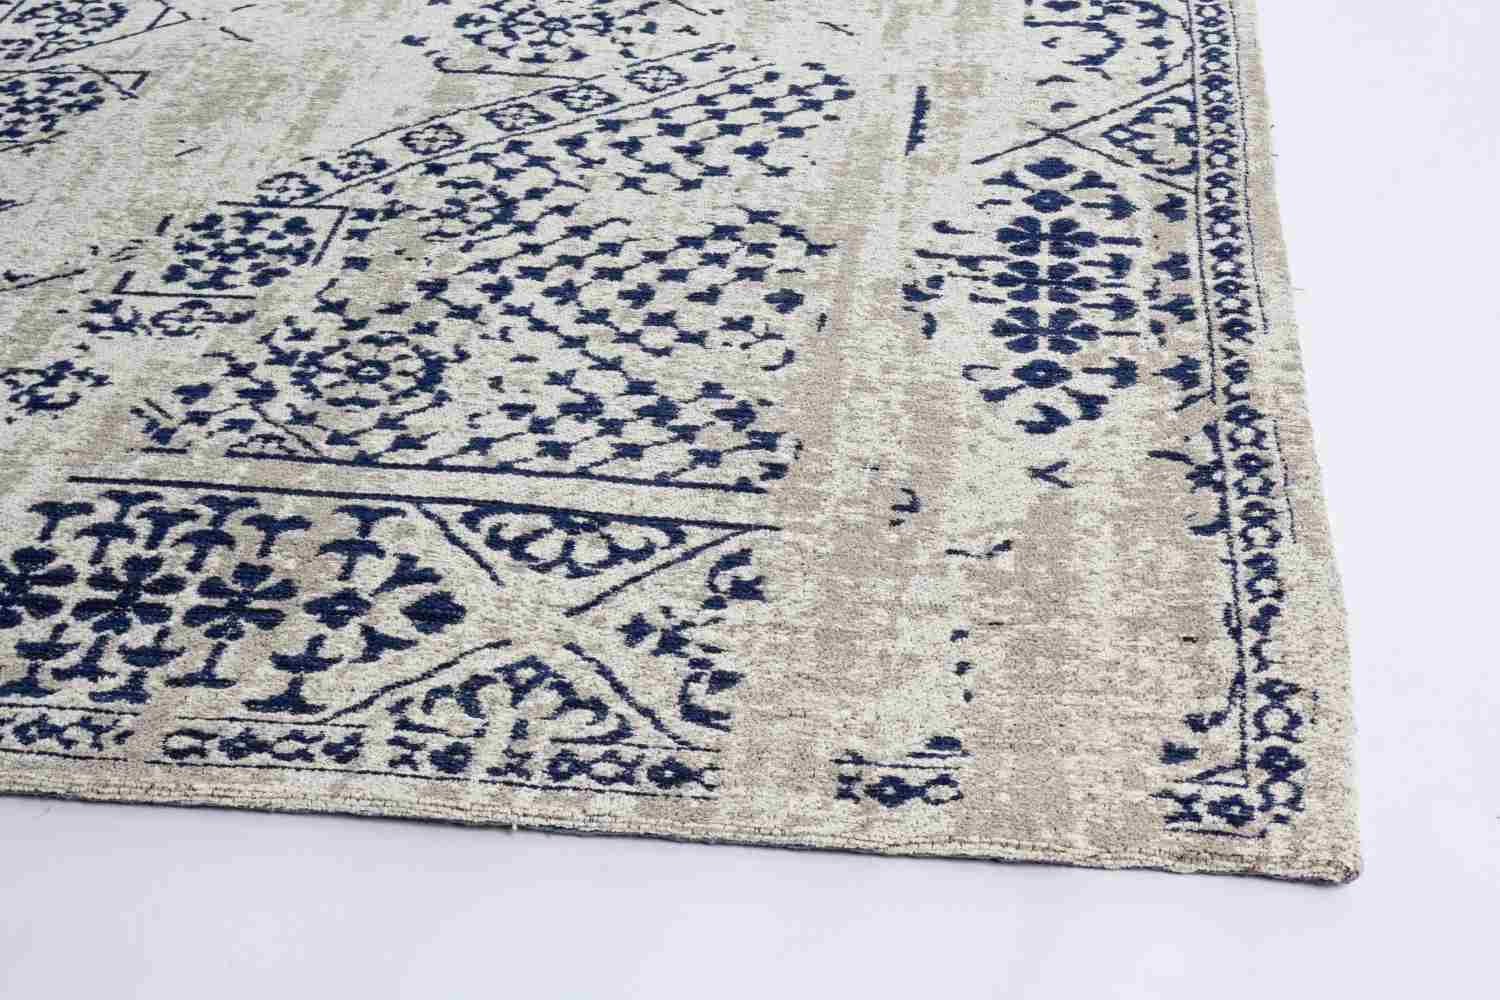 Der Teppich Bombay überzeugt mit seinem klassischen Design. Gefertigt wurde die Vorderseite aus 95% Chenille und 5% Polyester, die Rückseite aus 100% Baumwolle. Der Teppich besitzt einen blauen Farbton und die Maße von 160x230 cm.